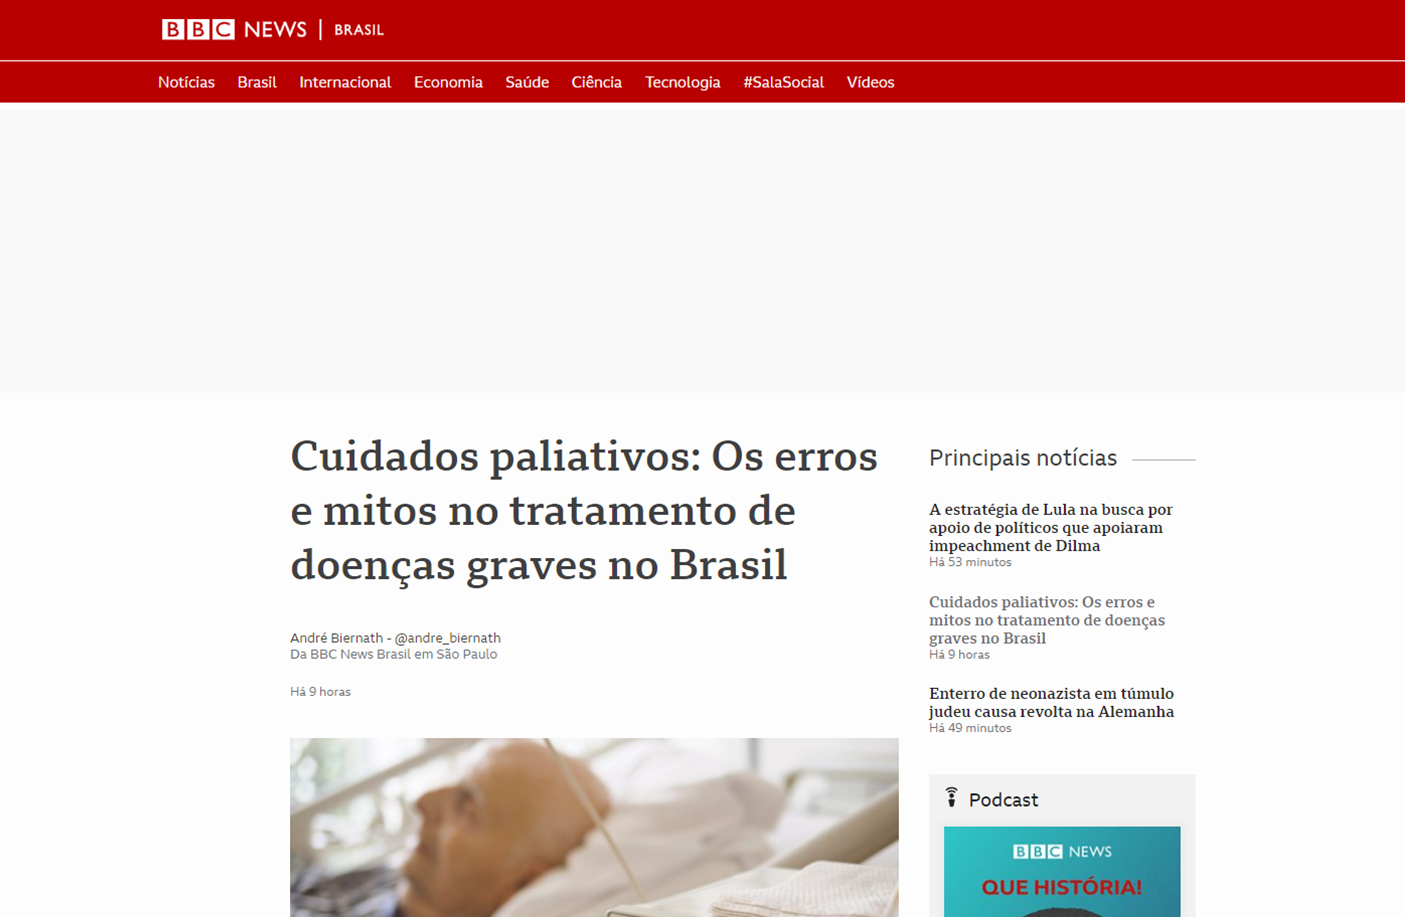 Cuidados paliativos: Os erros e mitos no tratamento de doenças graves no Brasil